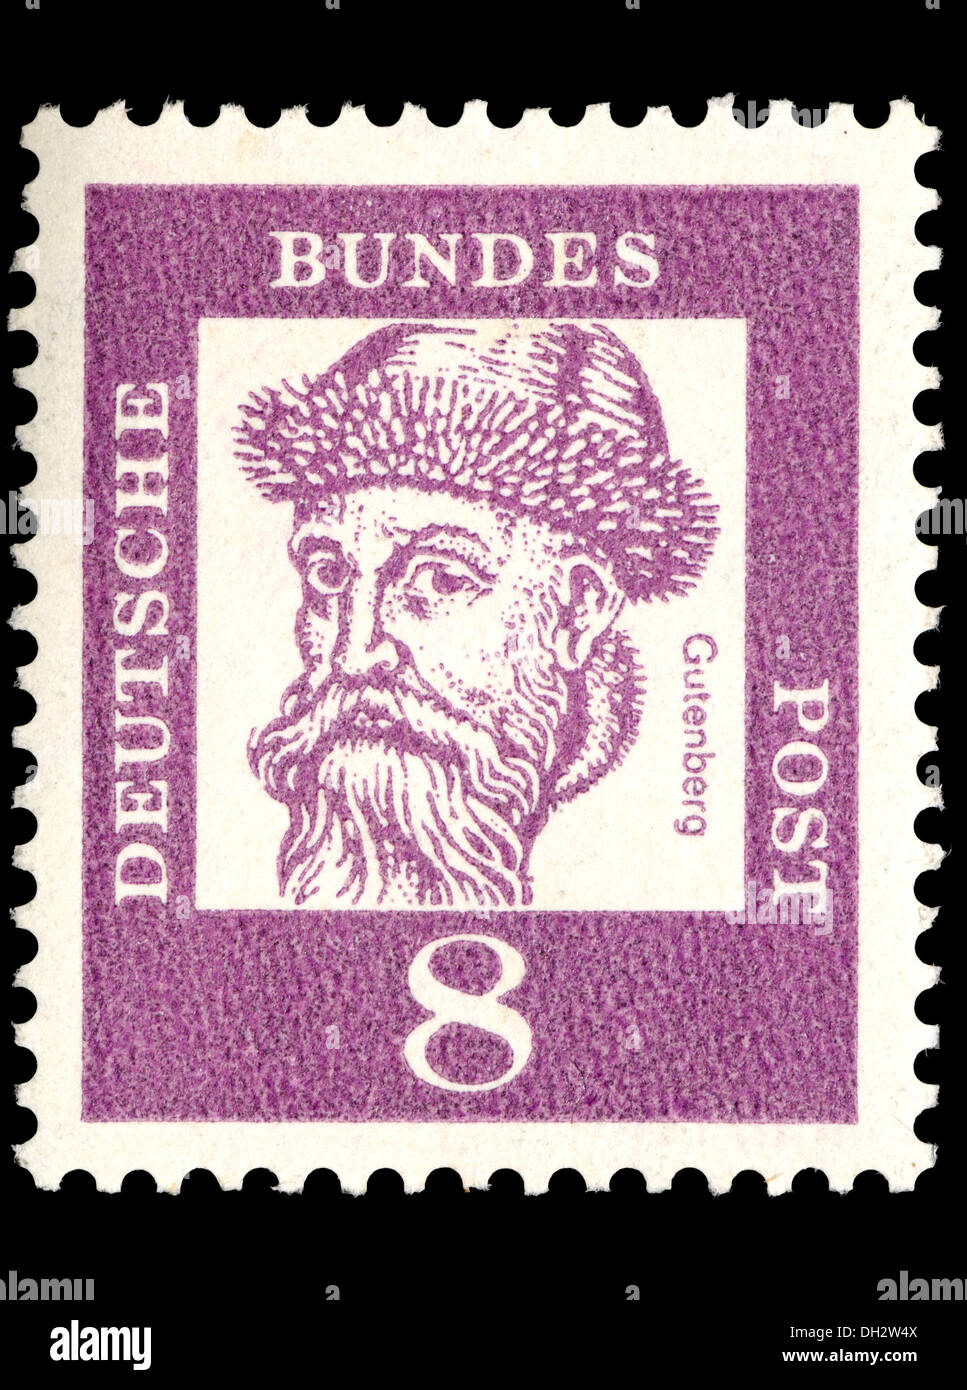 Portrait de Johannes Gutenberg (1395-1468 : éditeur allemand, a introduit l'impression vers l'Europe, c1439) sur le timbre-poste allemand Banque D'Images